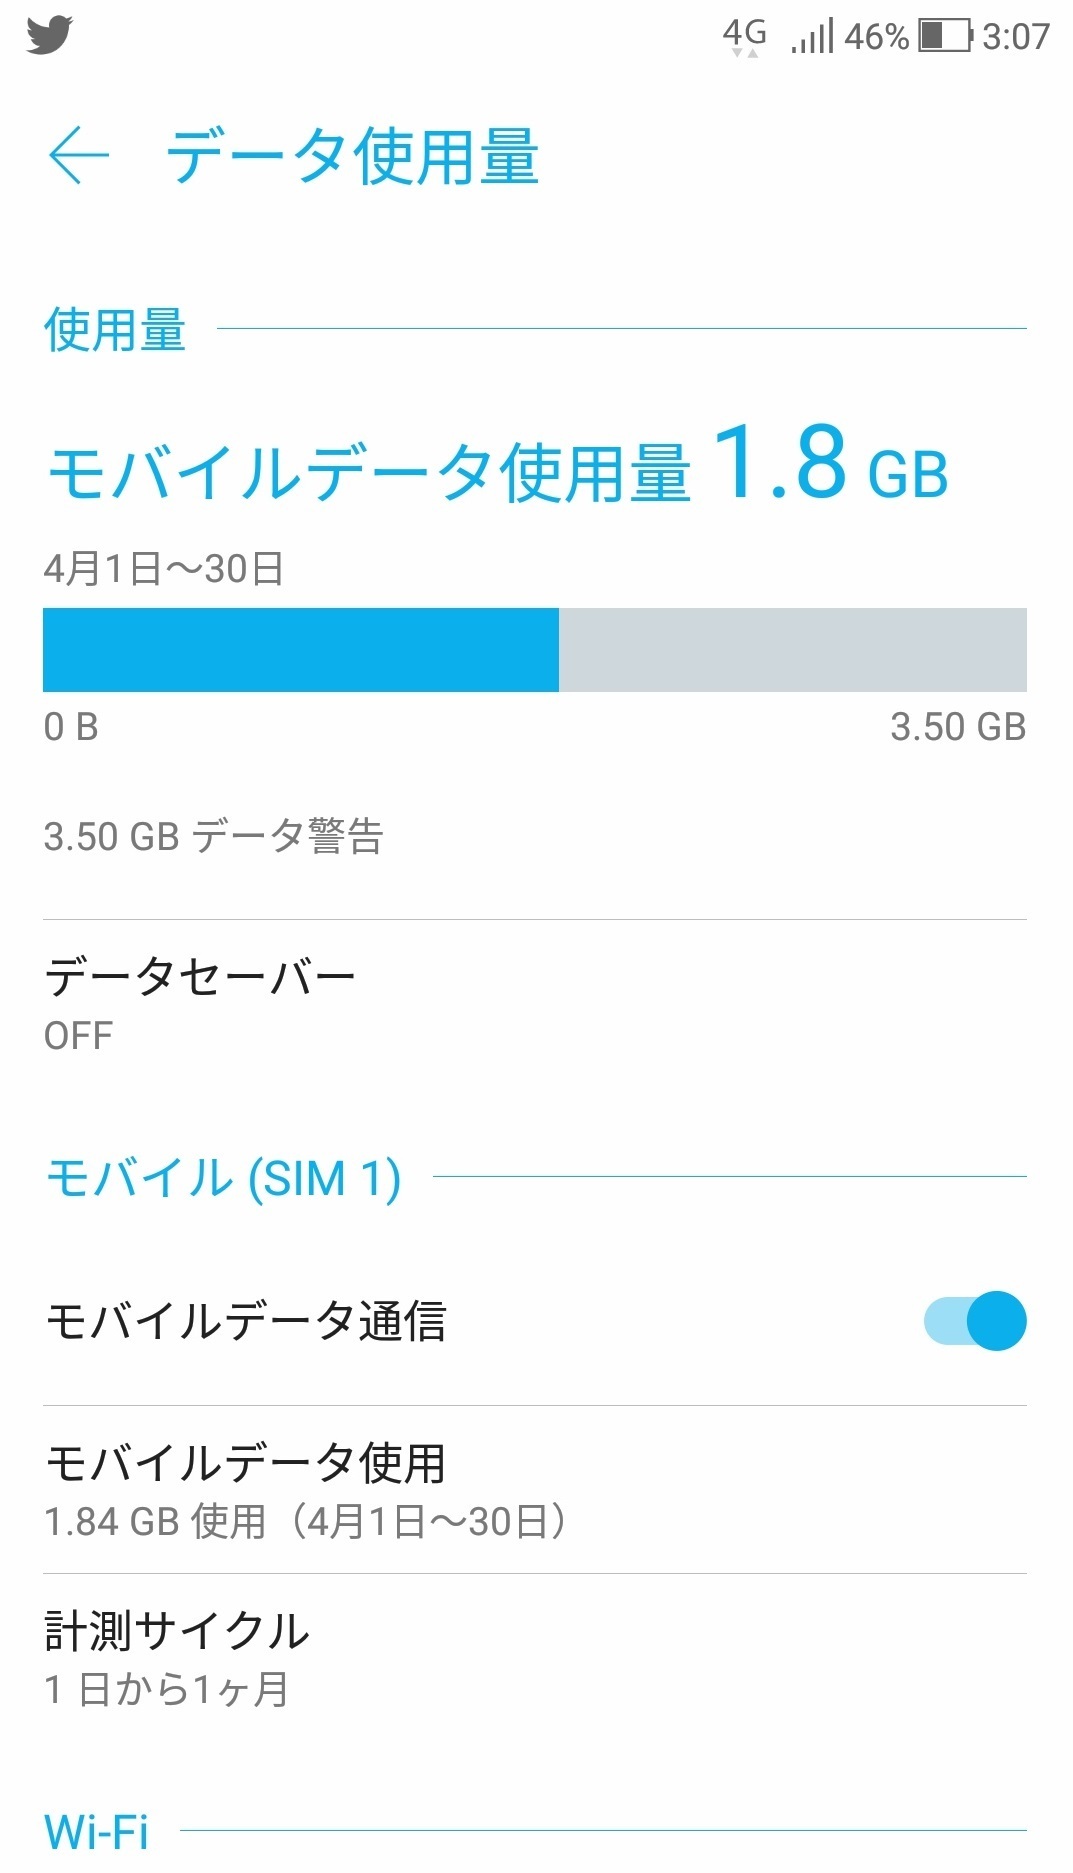 sumaho_net_data_shiyoro_sim.jpg